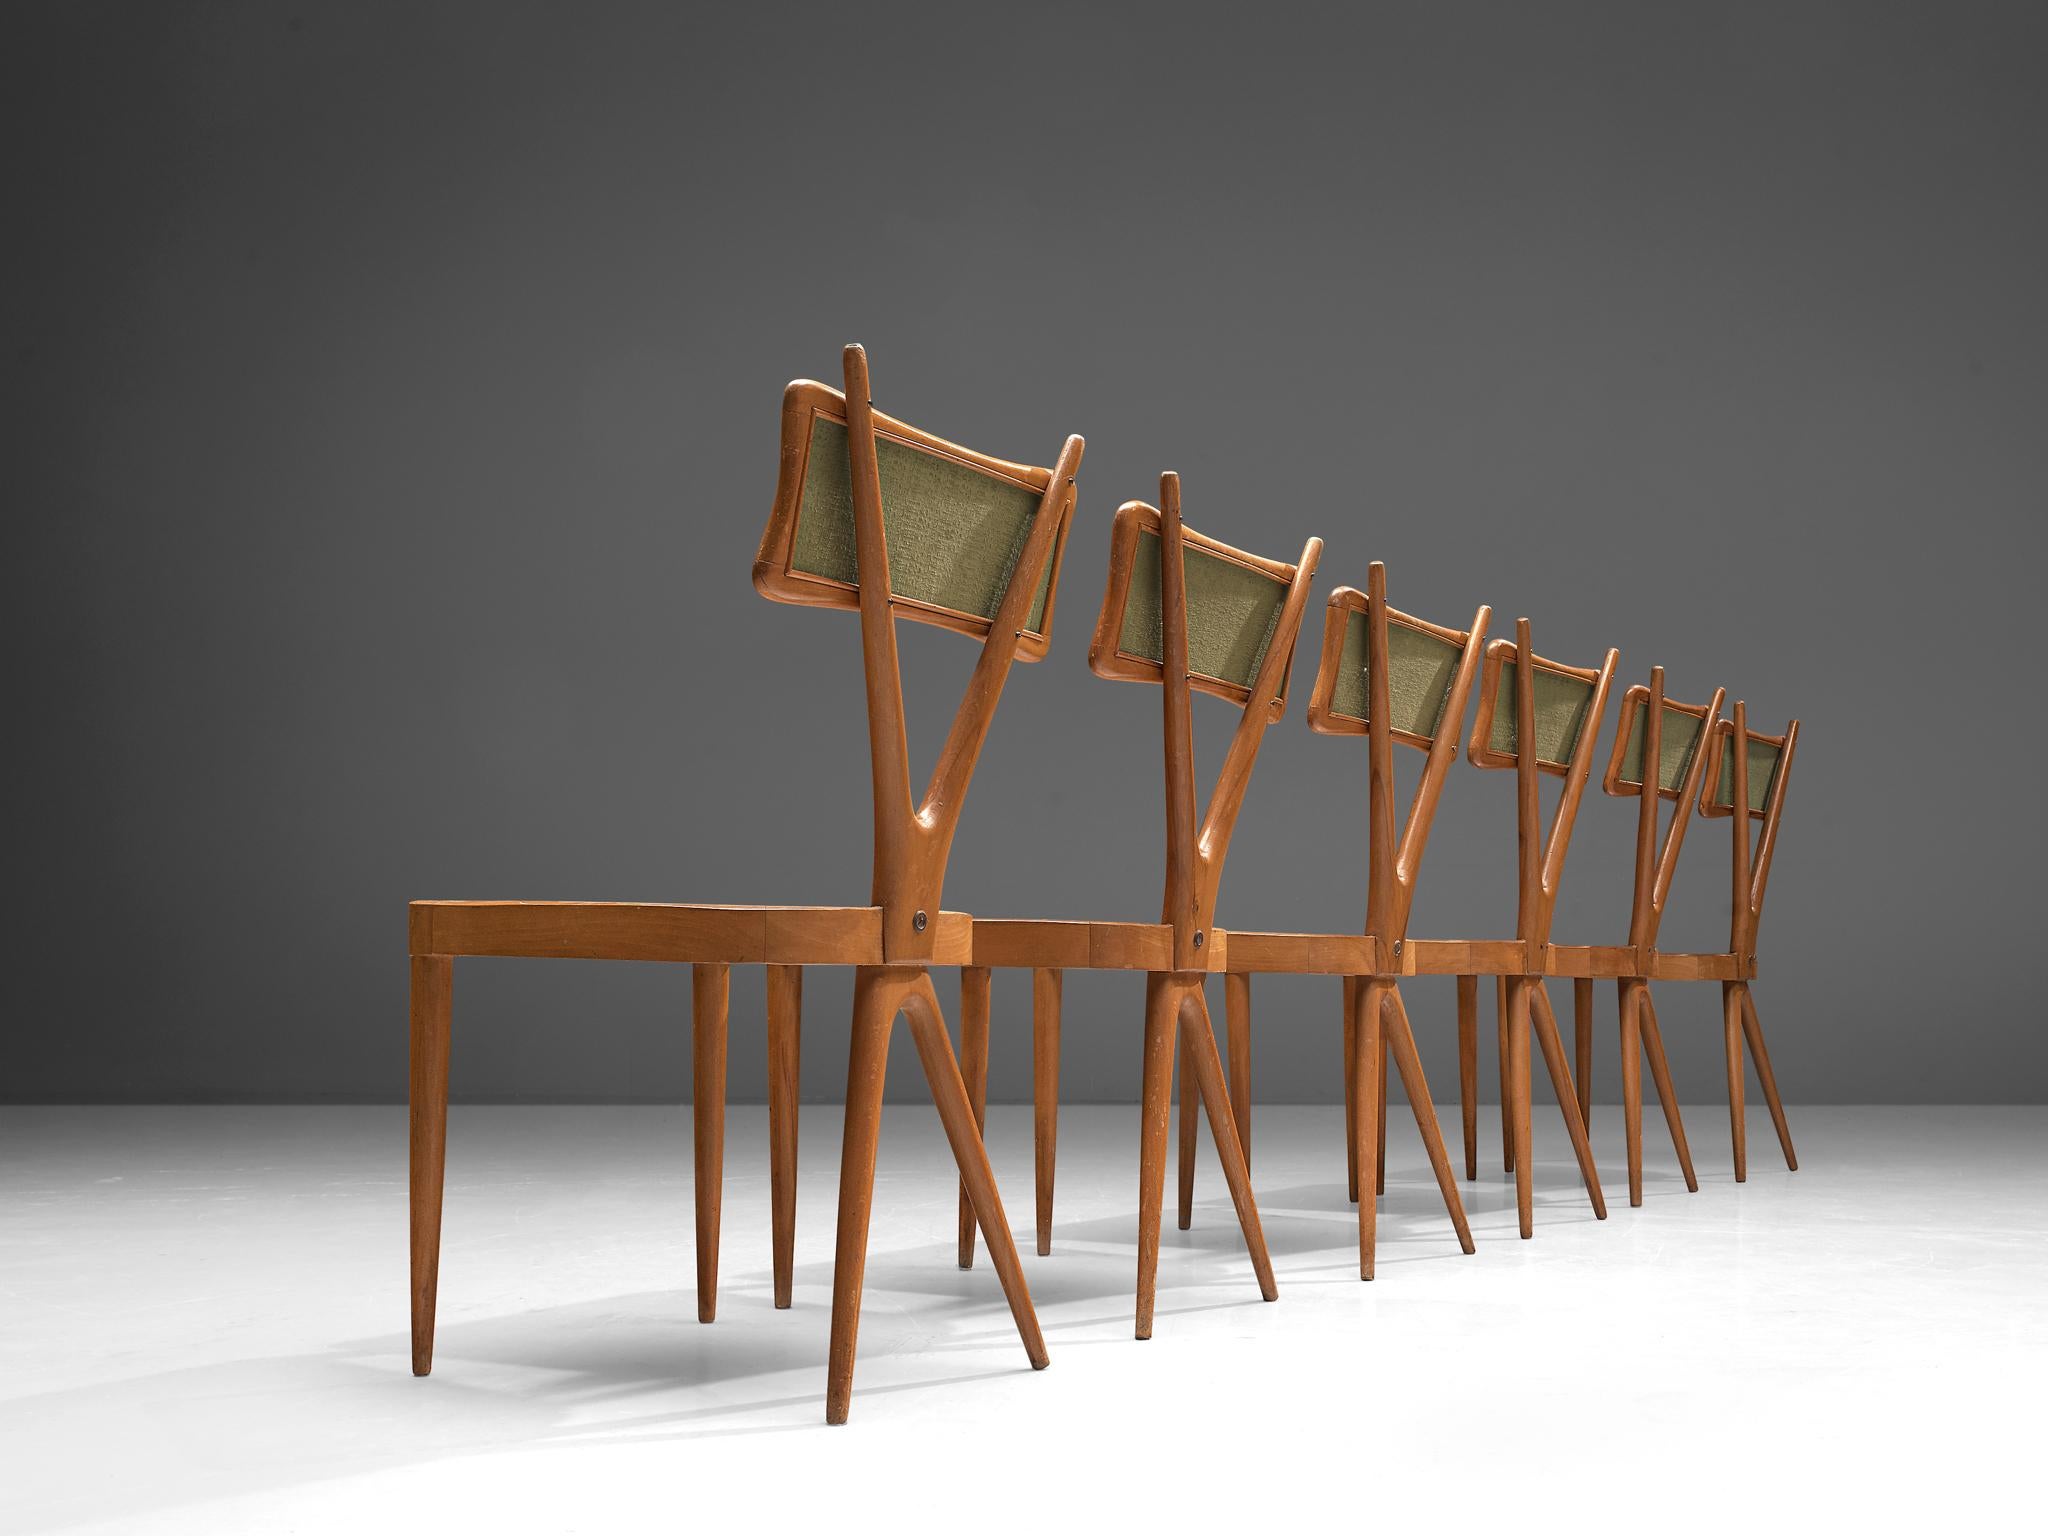 Gianni Vigorelli, Satz von sechs Esszimmerstühlen, Buche, Sperrholz, Stoff, Italien, 1950er Jahre.

Diese Stühle sind wunderschön konstruiert und verfügen über einen X-förmigen Rahmen, ein auffälliges Detail, das optisch überzeugt. Die Rückenlehne